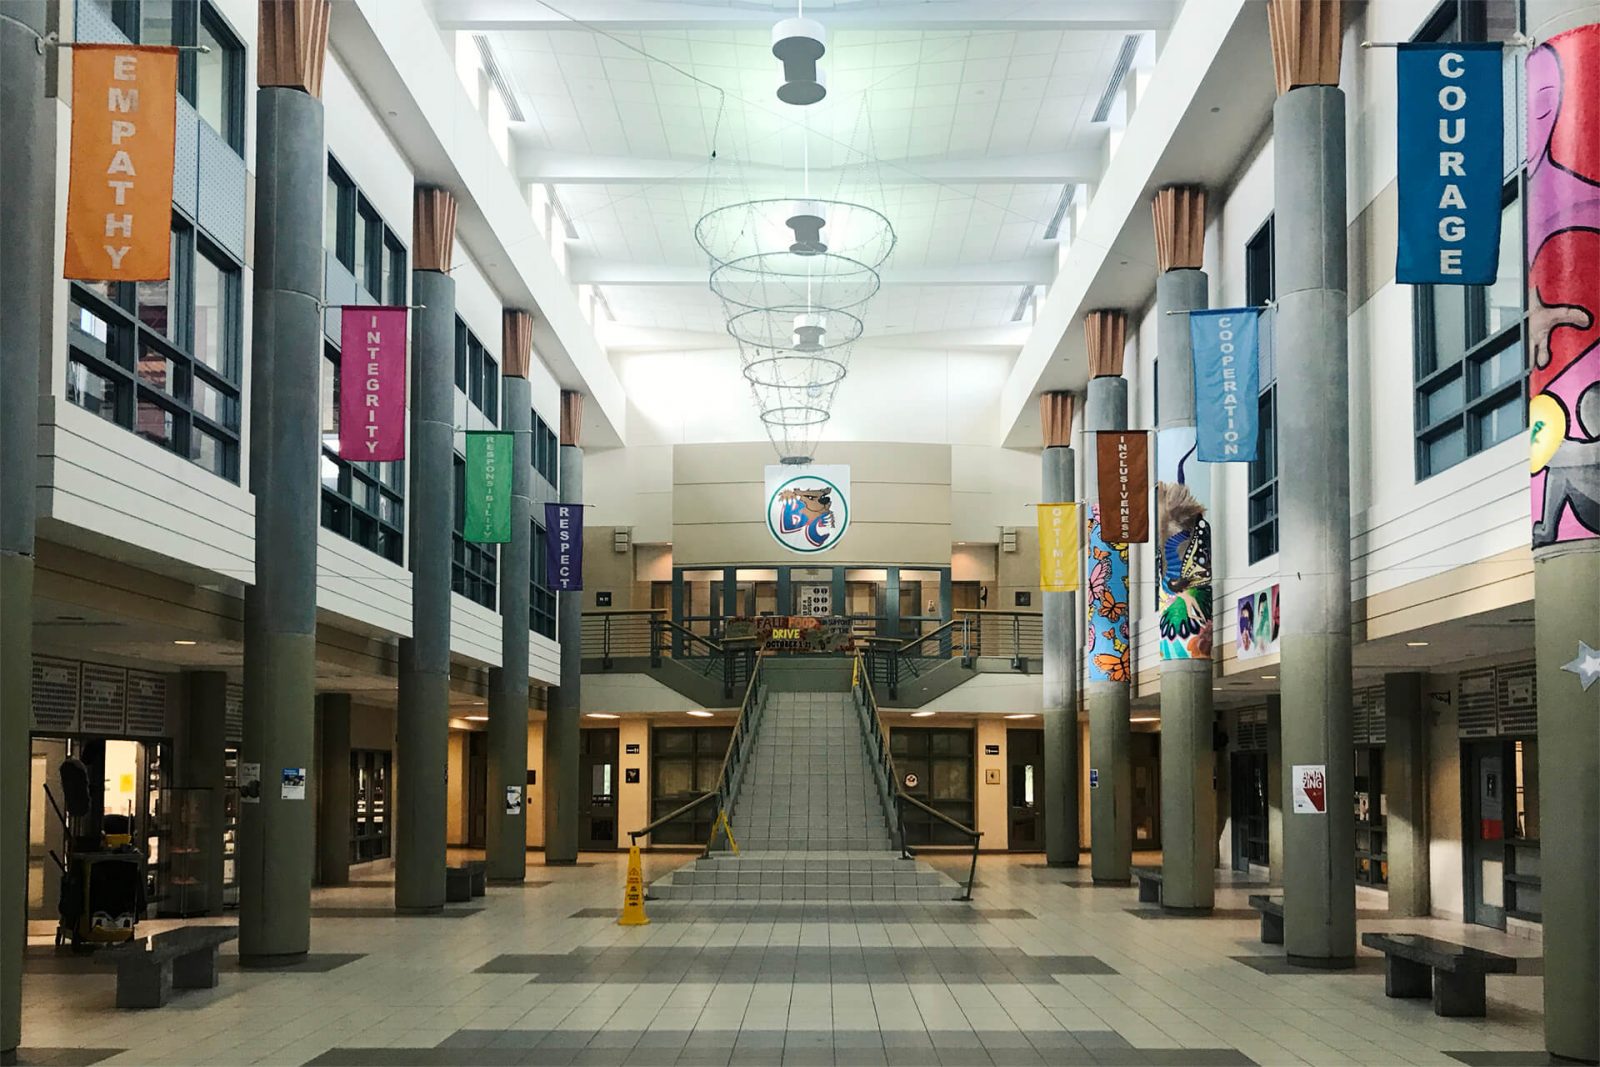 Hall principal de instituto, Canadá, con banderolas y valores